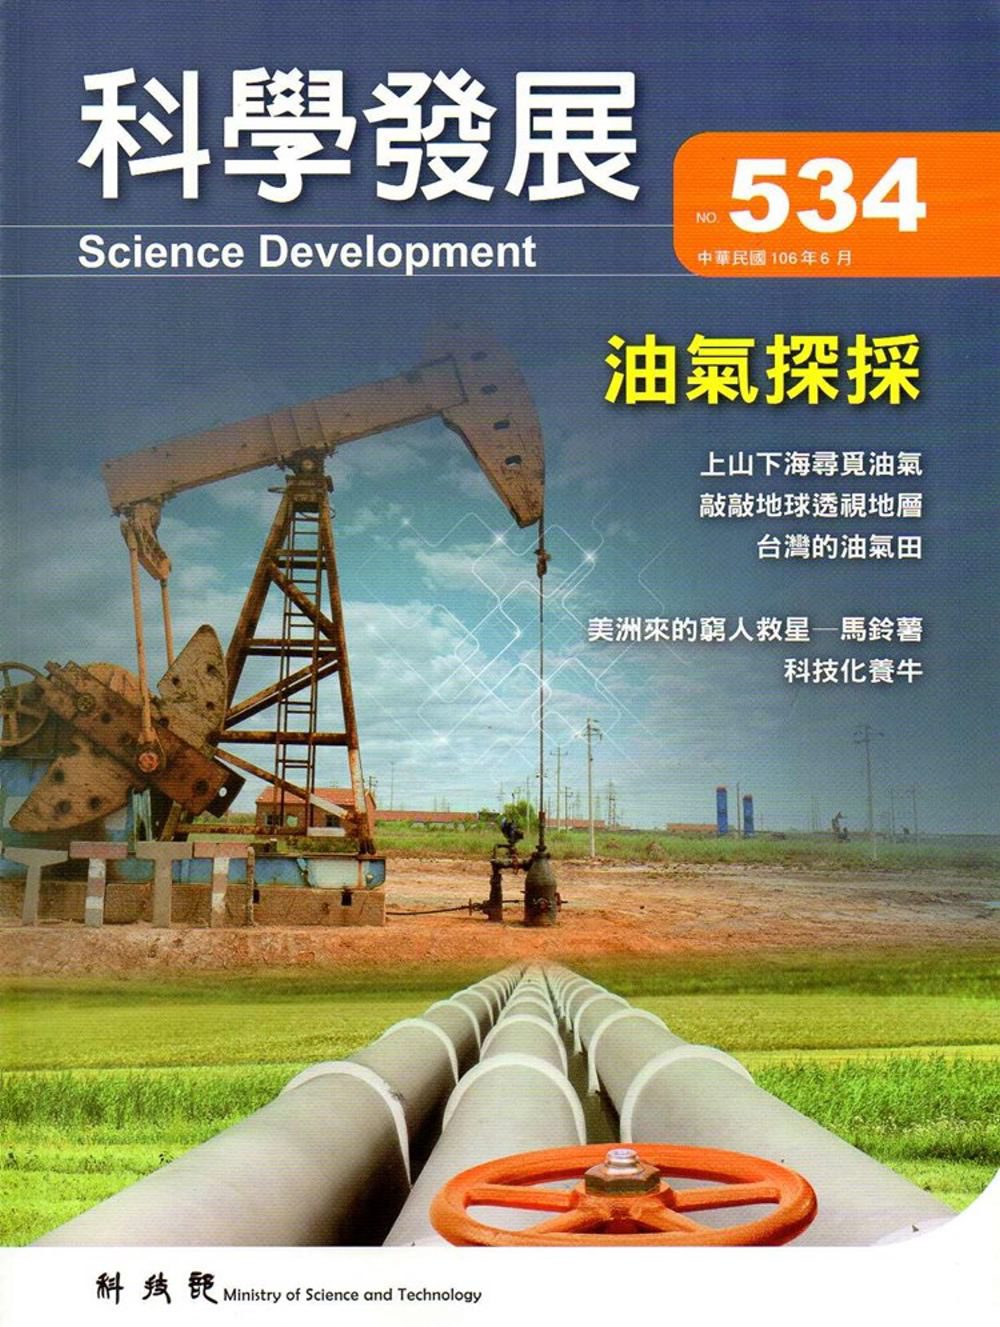 科學發展月刊第534期(106/06)